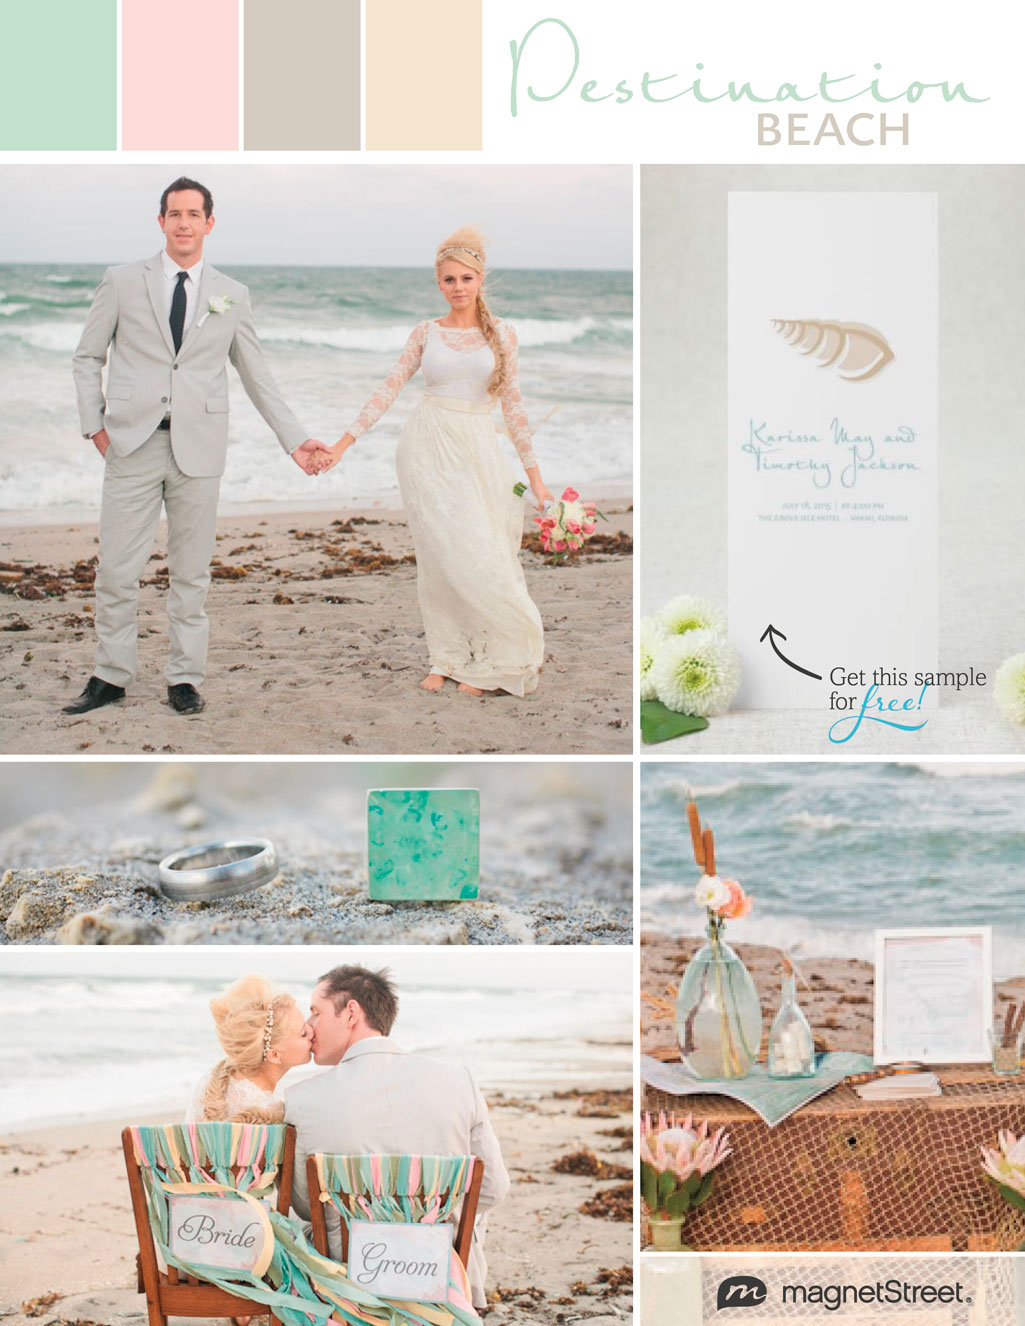 Soft, destination beach wedding inspiration in pastels